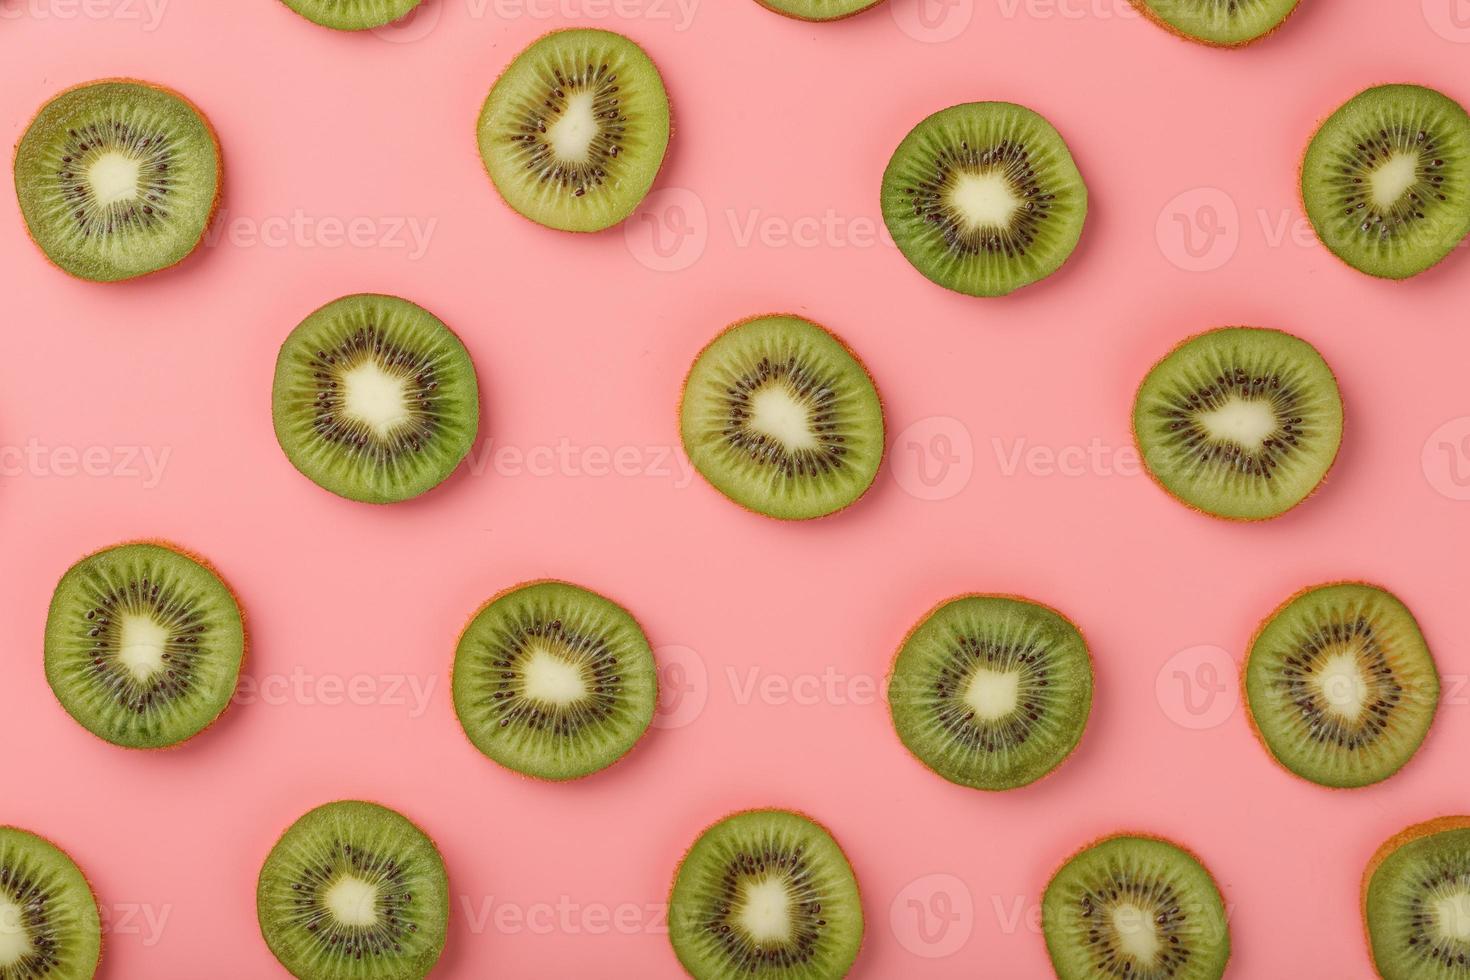 rodajas de kiwi maduras en patrones sobre un fondo rosa. foto